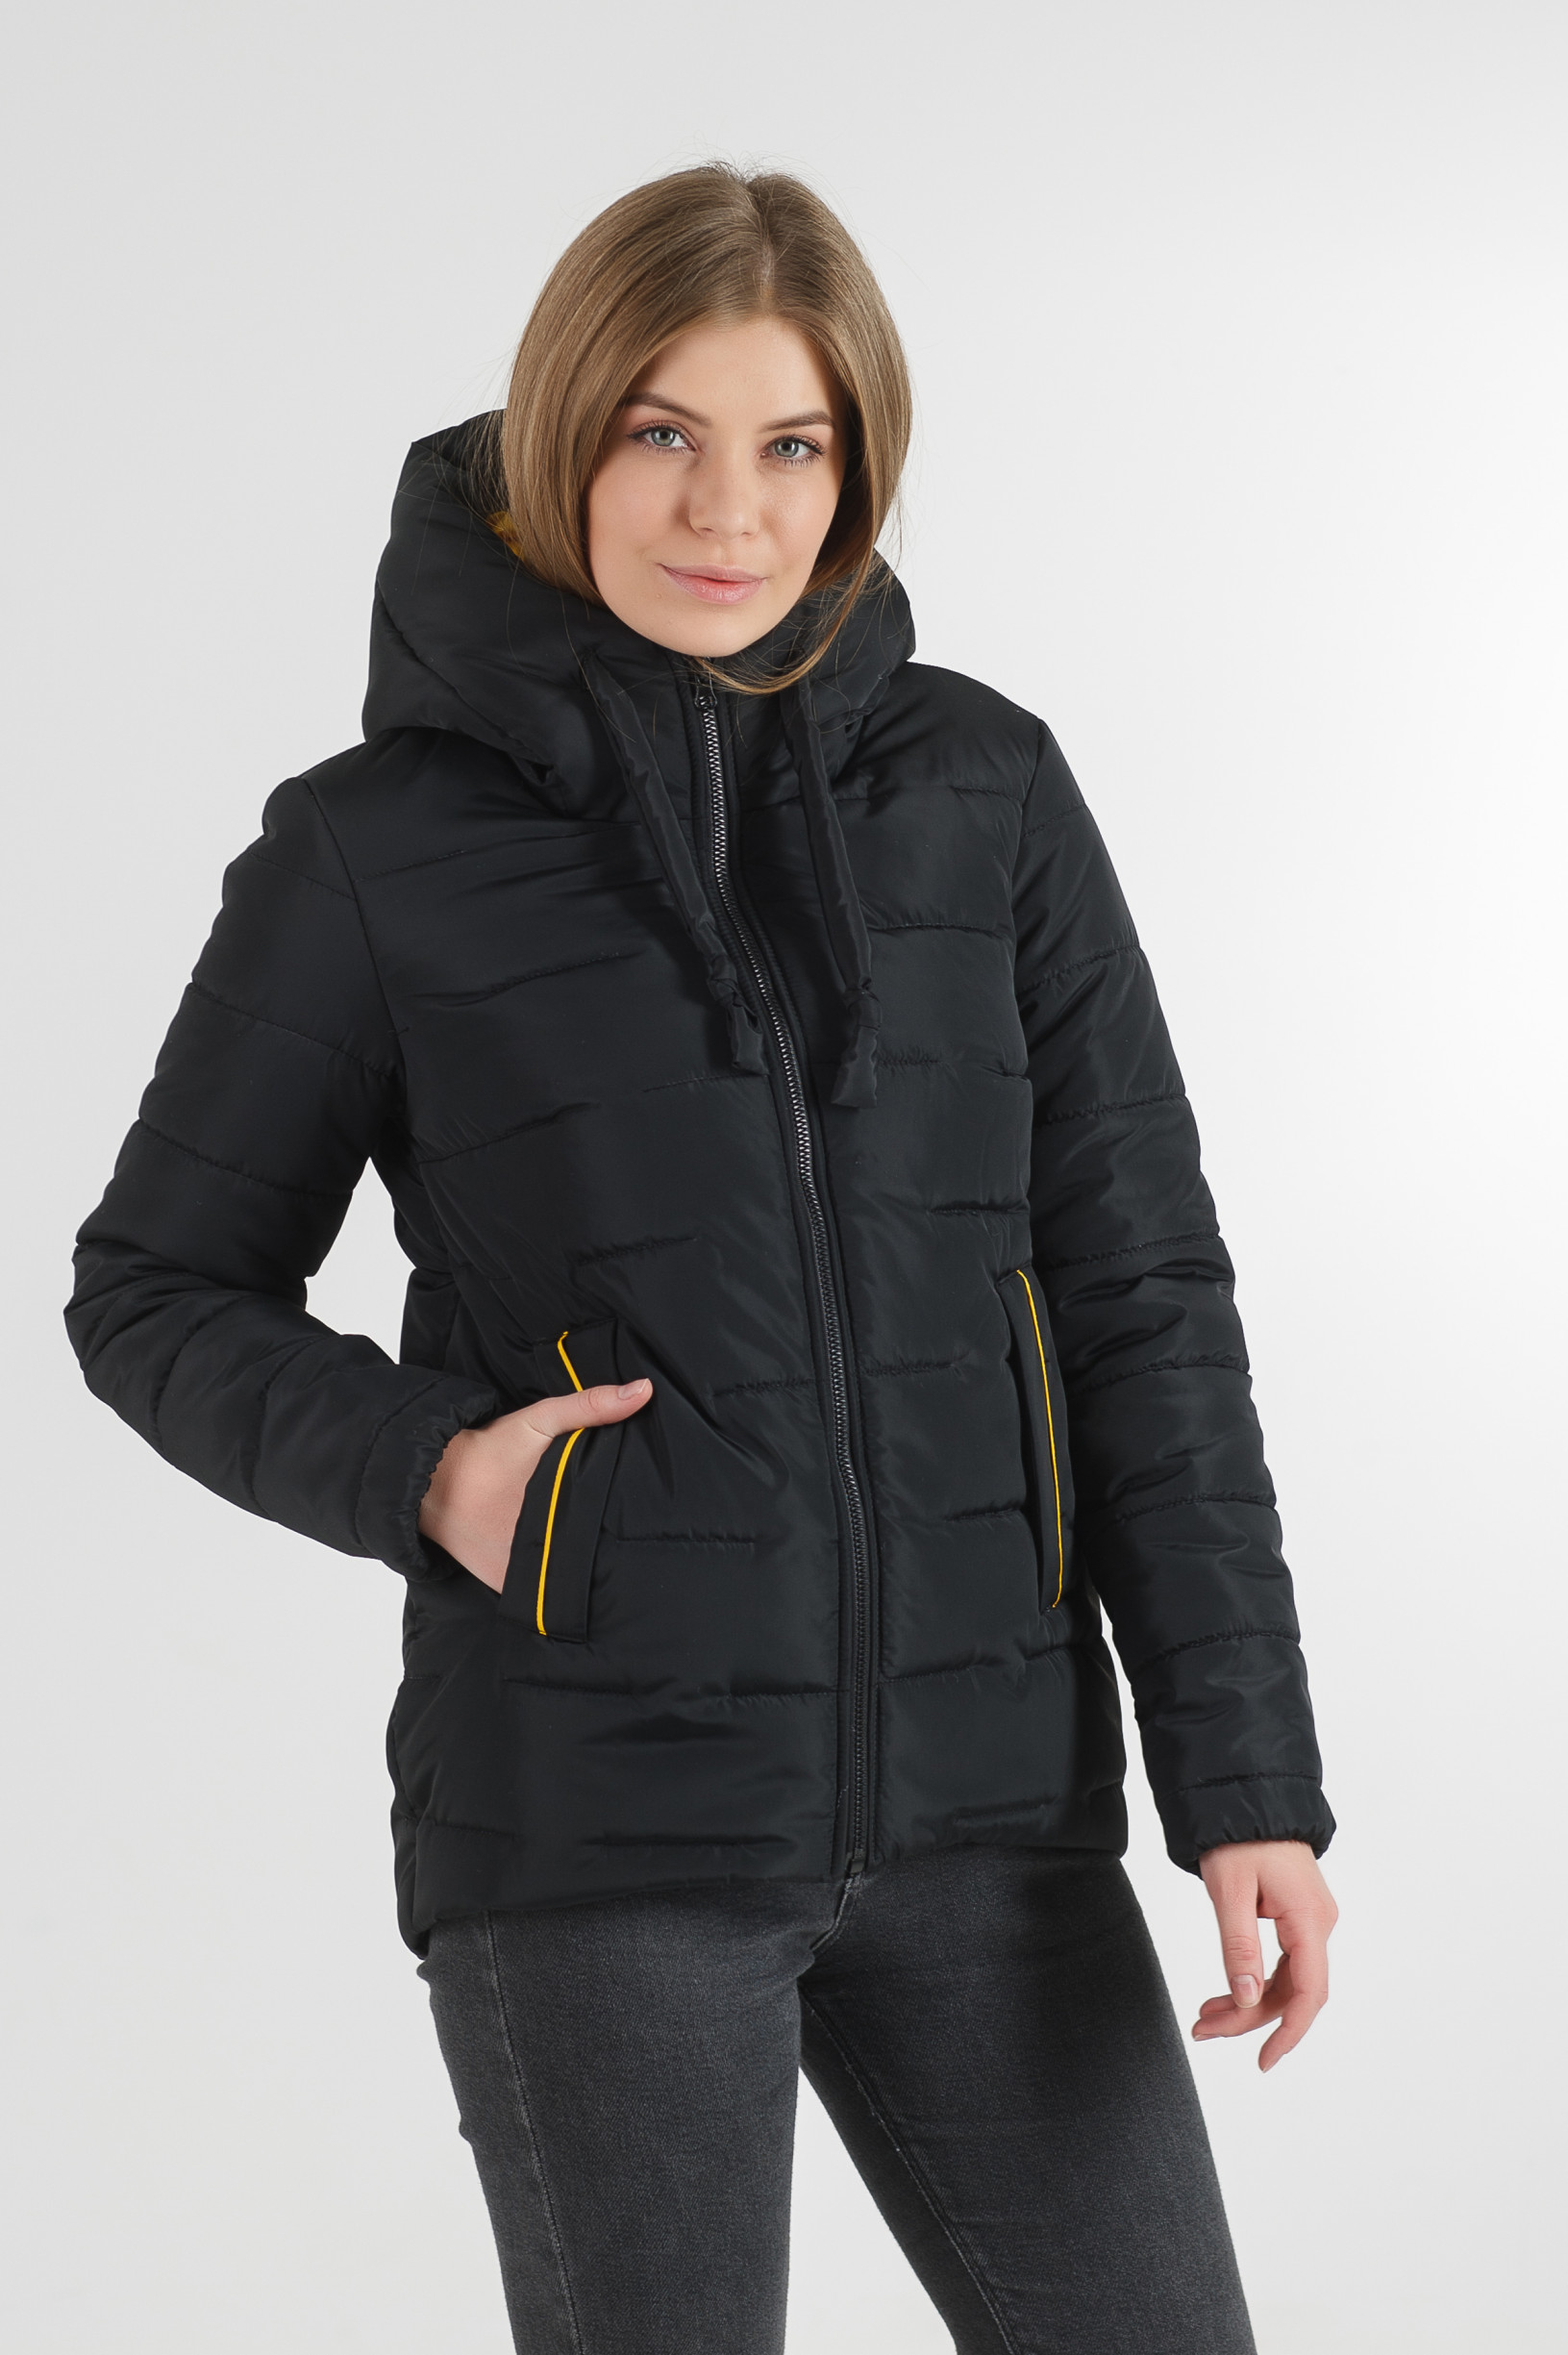 Женские зимние куртки по лучшим ценам в Украине